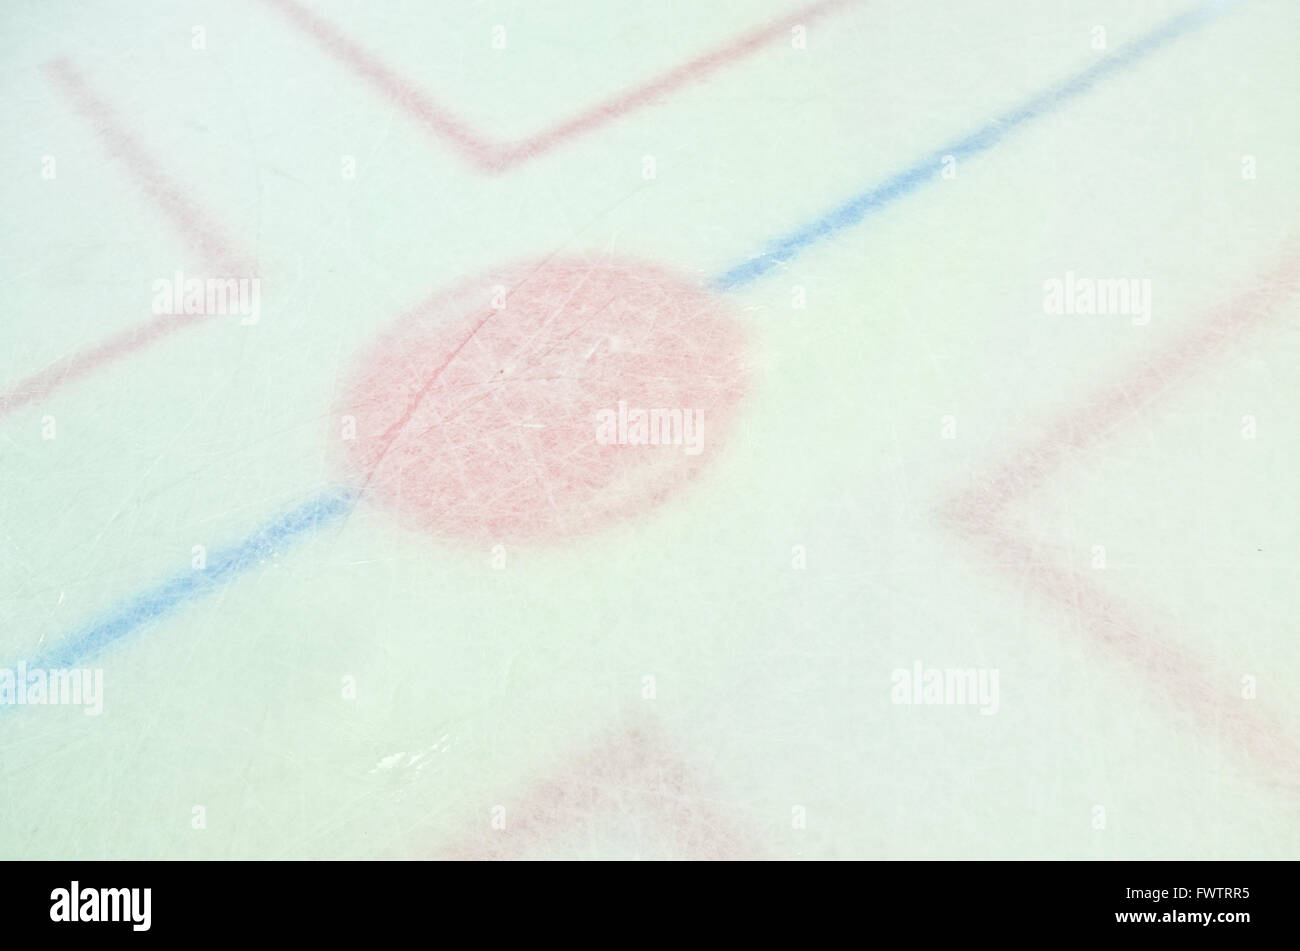 Il cerchio sul ghiaccio della pista da hockey in cui i giocatori Faceoff Foto Stock